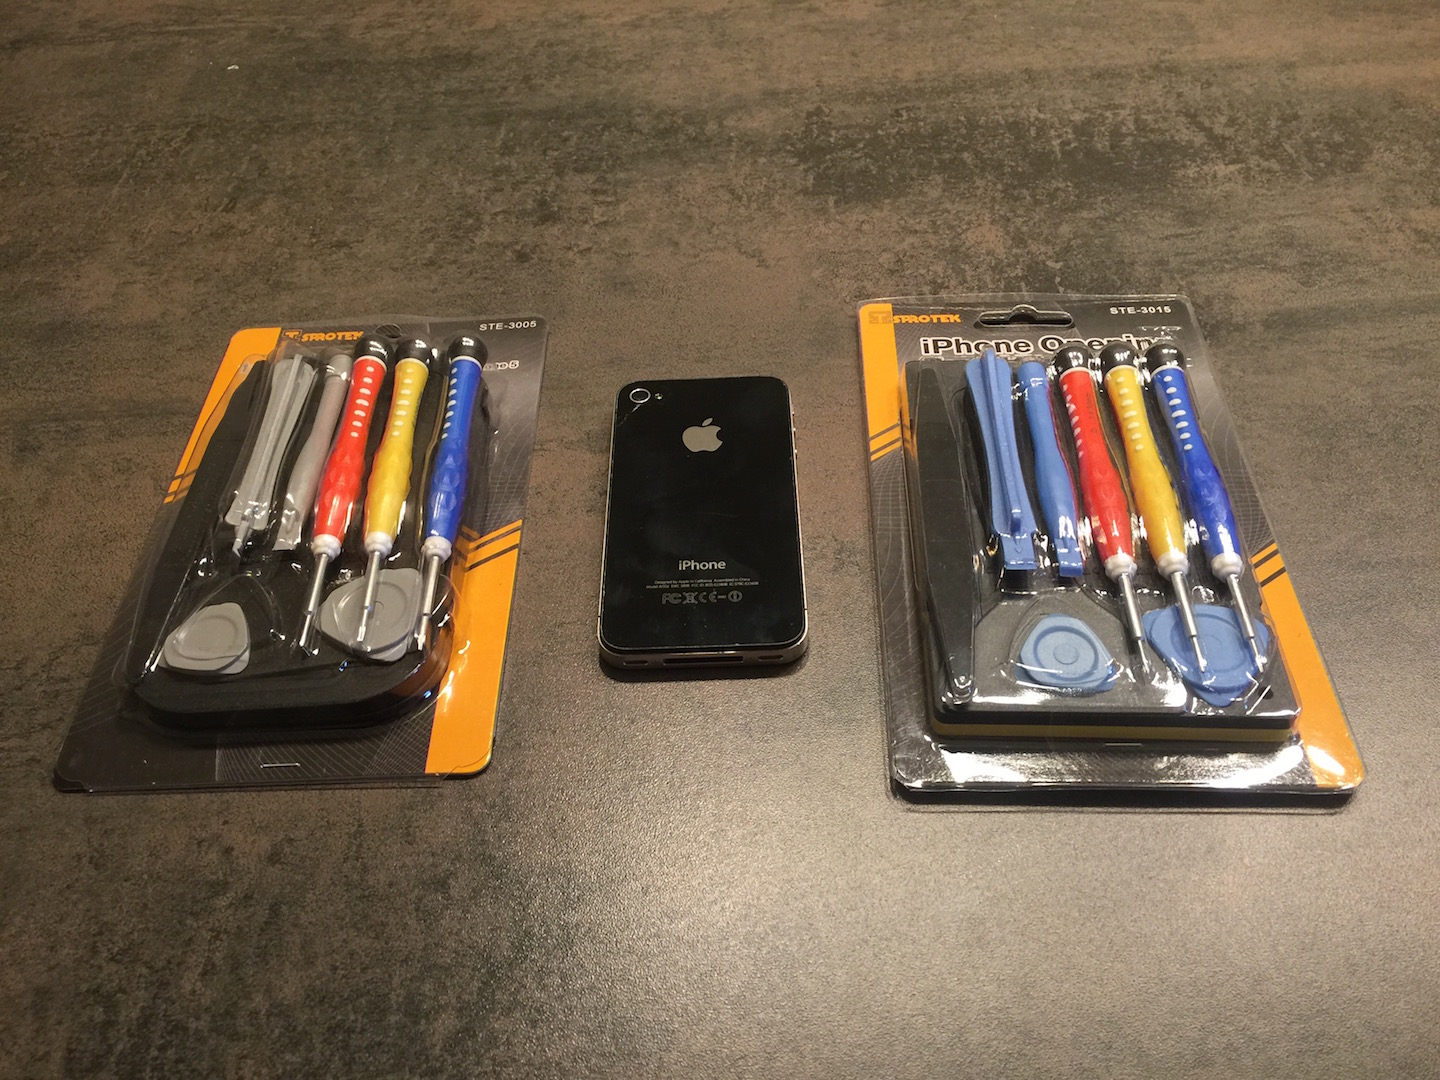 Tool Kit per smontare e riparare un iPhone 4S/5 - Recensione iPhoneItalia -  iPhone Italia